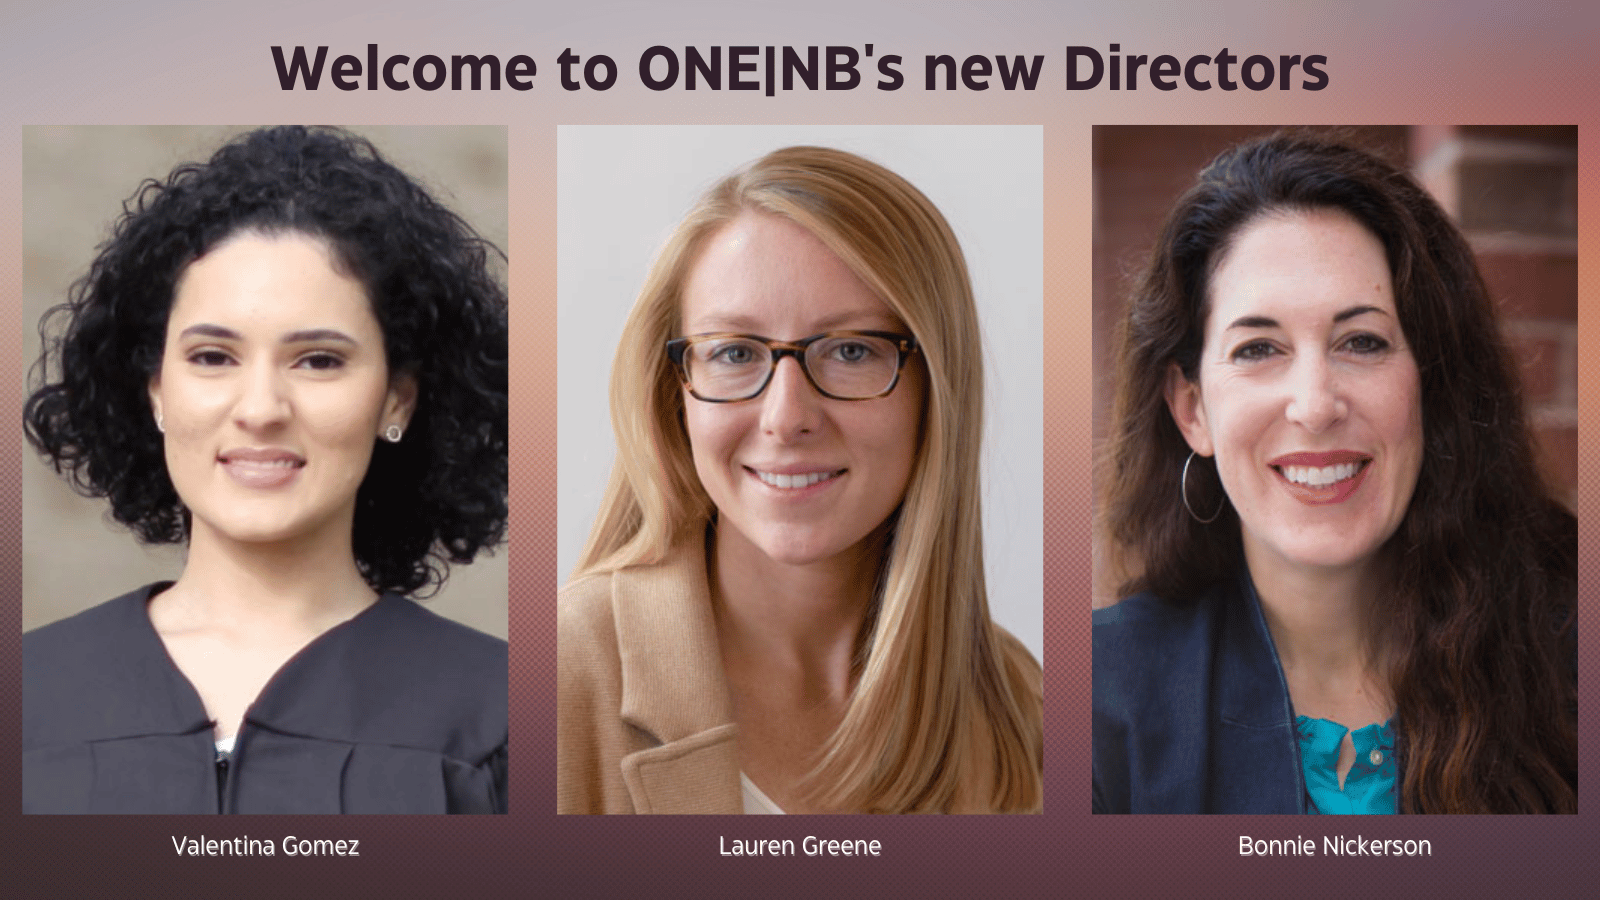 Una imagen de las nuevas directoras de ONE: Valentina Gómez, Lauren Greene y Bonnie Nickerson